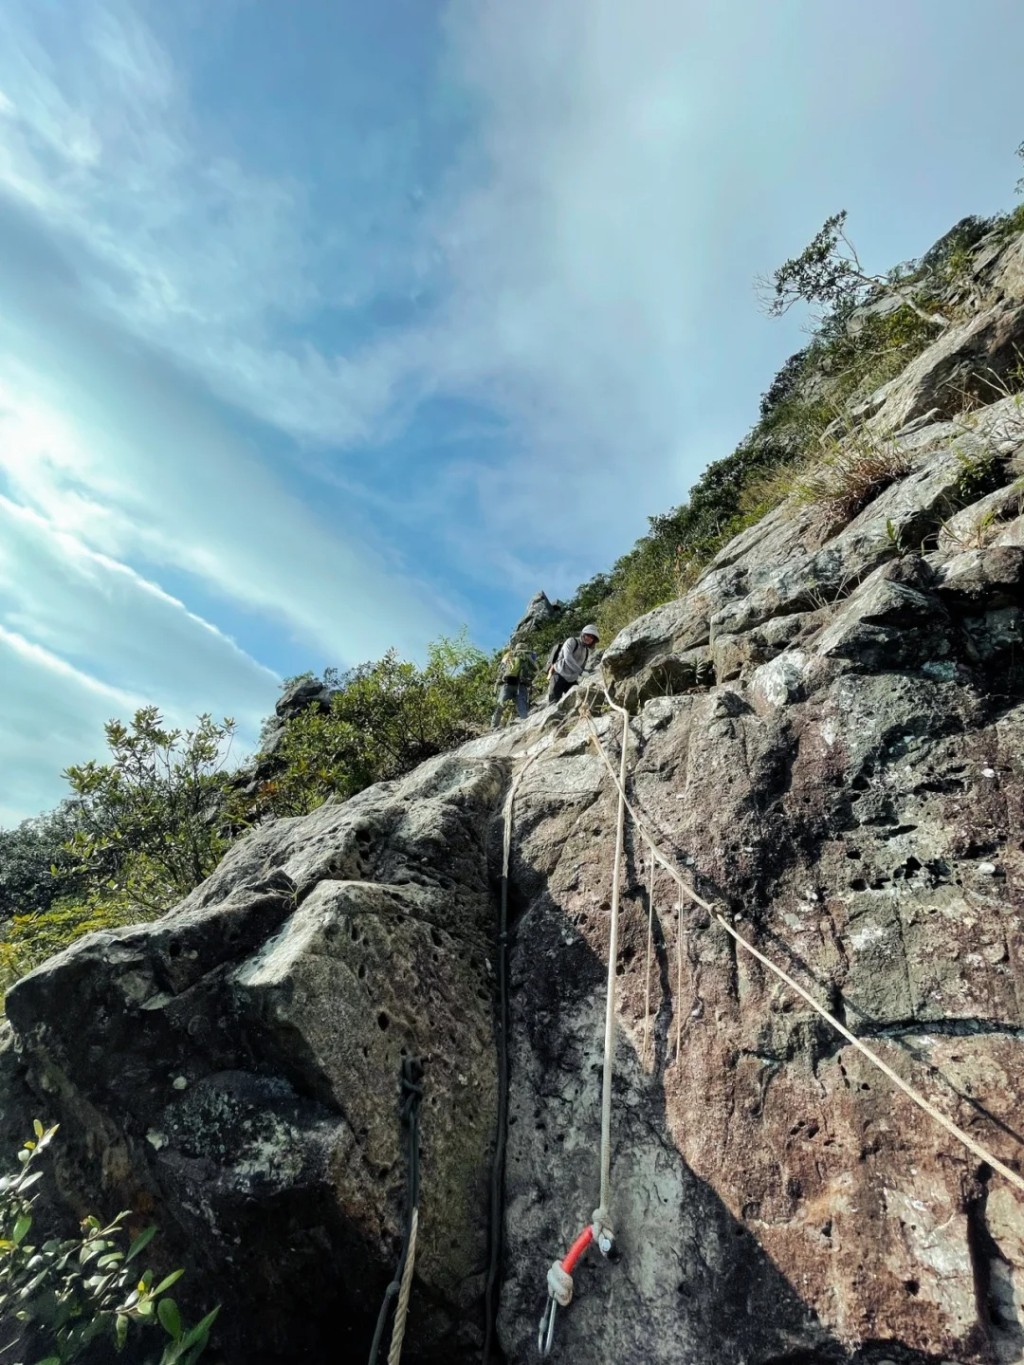 排牙山龟仙石是深圳许多爬山客的挑战目标。小红书